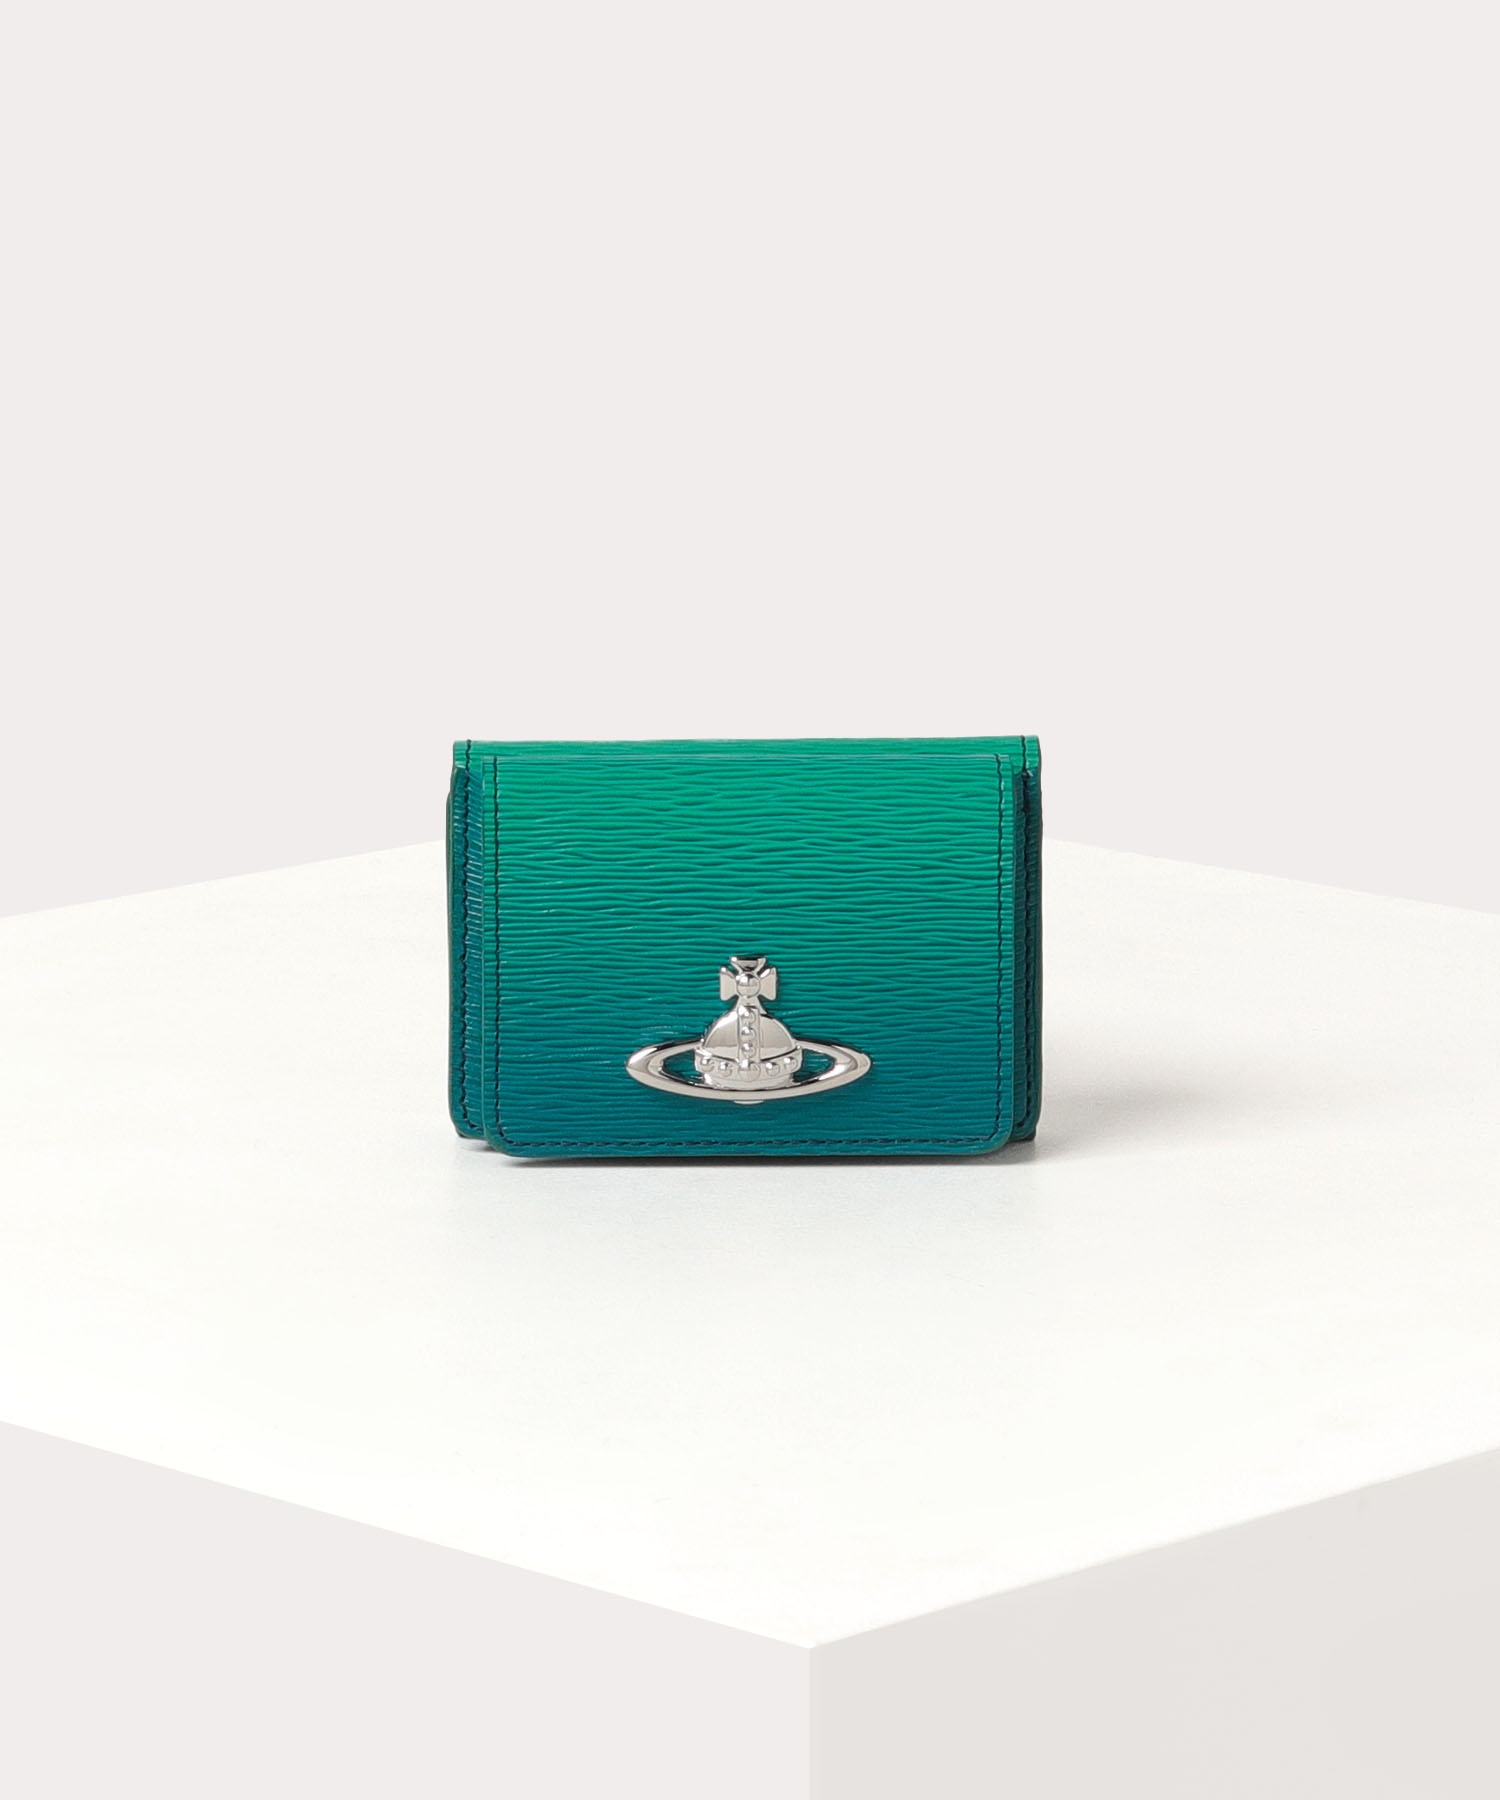 人気のミニ財布はVivienne Westwoodのグラデーションです